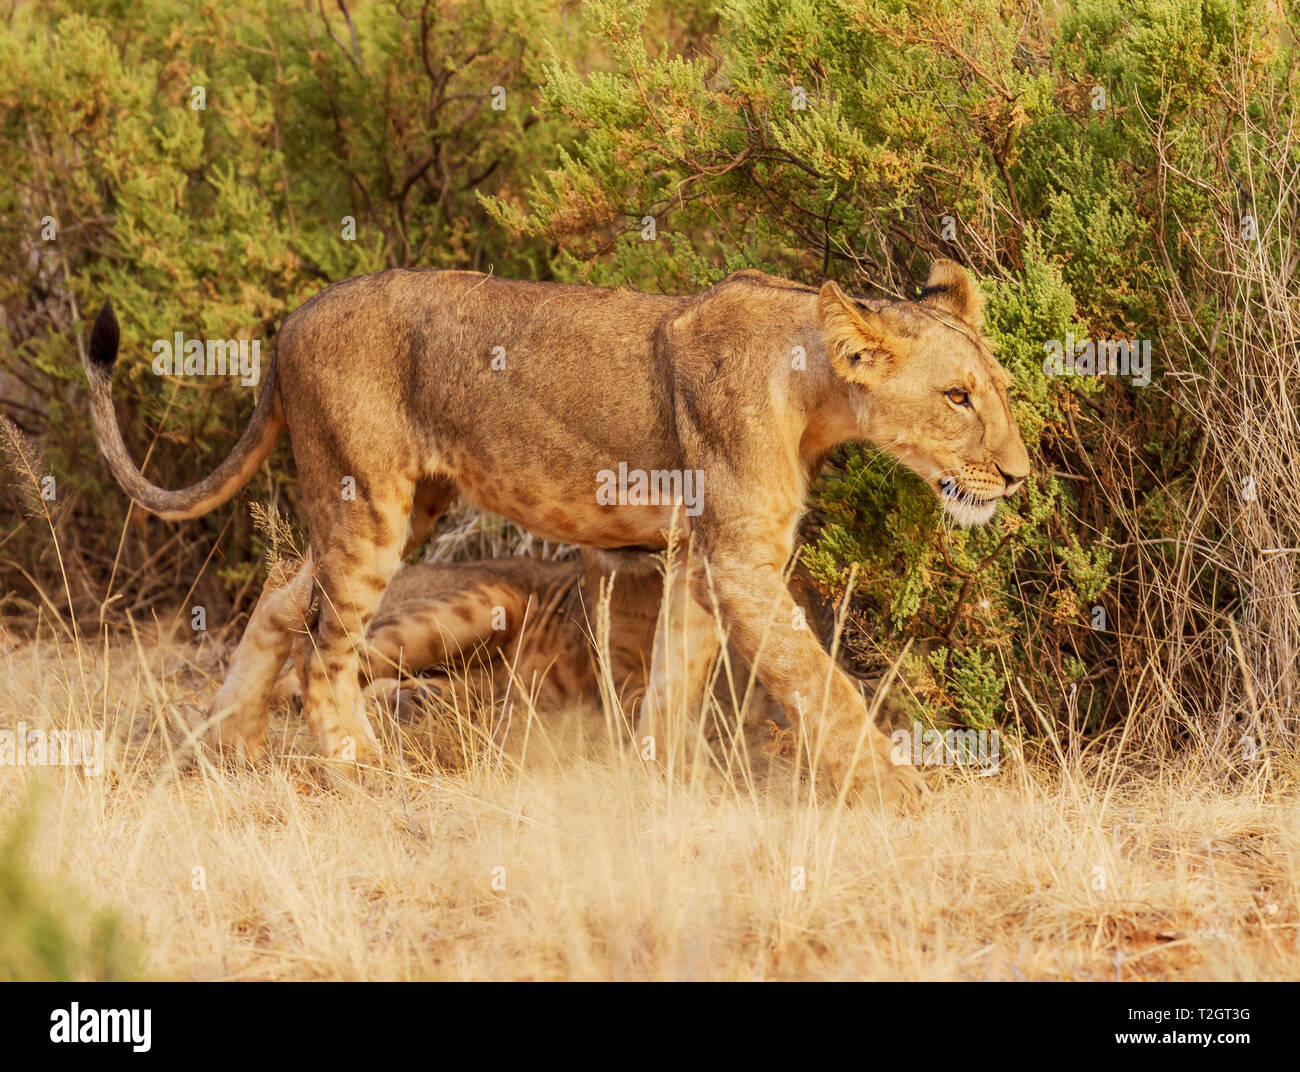 Lion, Panthera leo, promenades en hélicoptère. La Réserve nationale de Samburu, Kenya, Afrique de l'Est gros chat sauvage cinq grandes espèces vulnérables, side view Banque D'Images